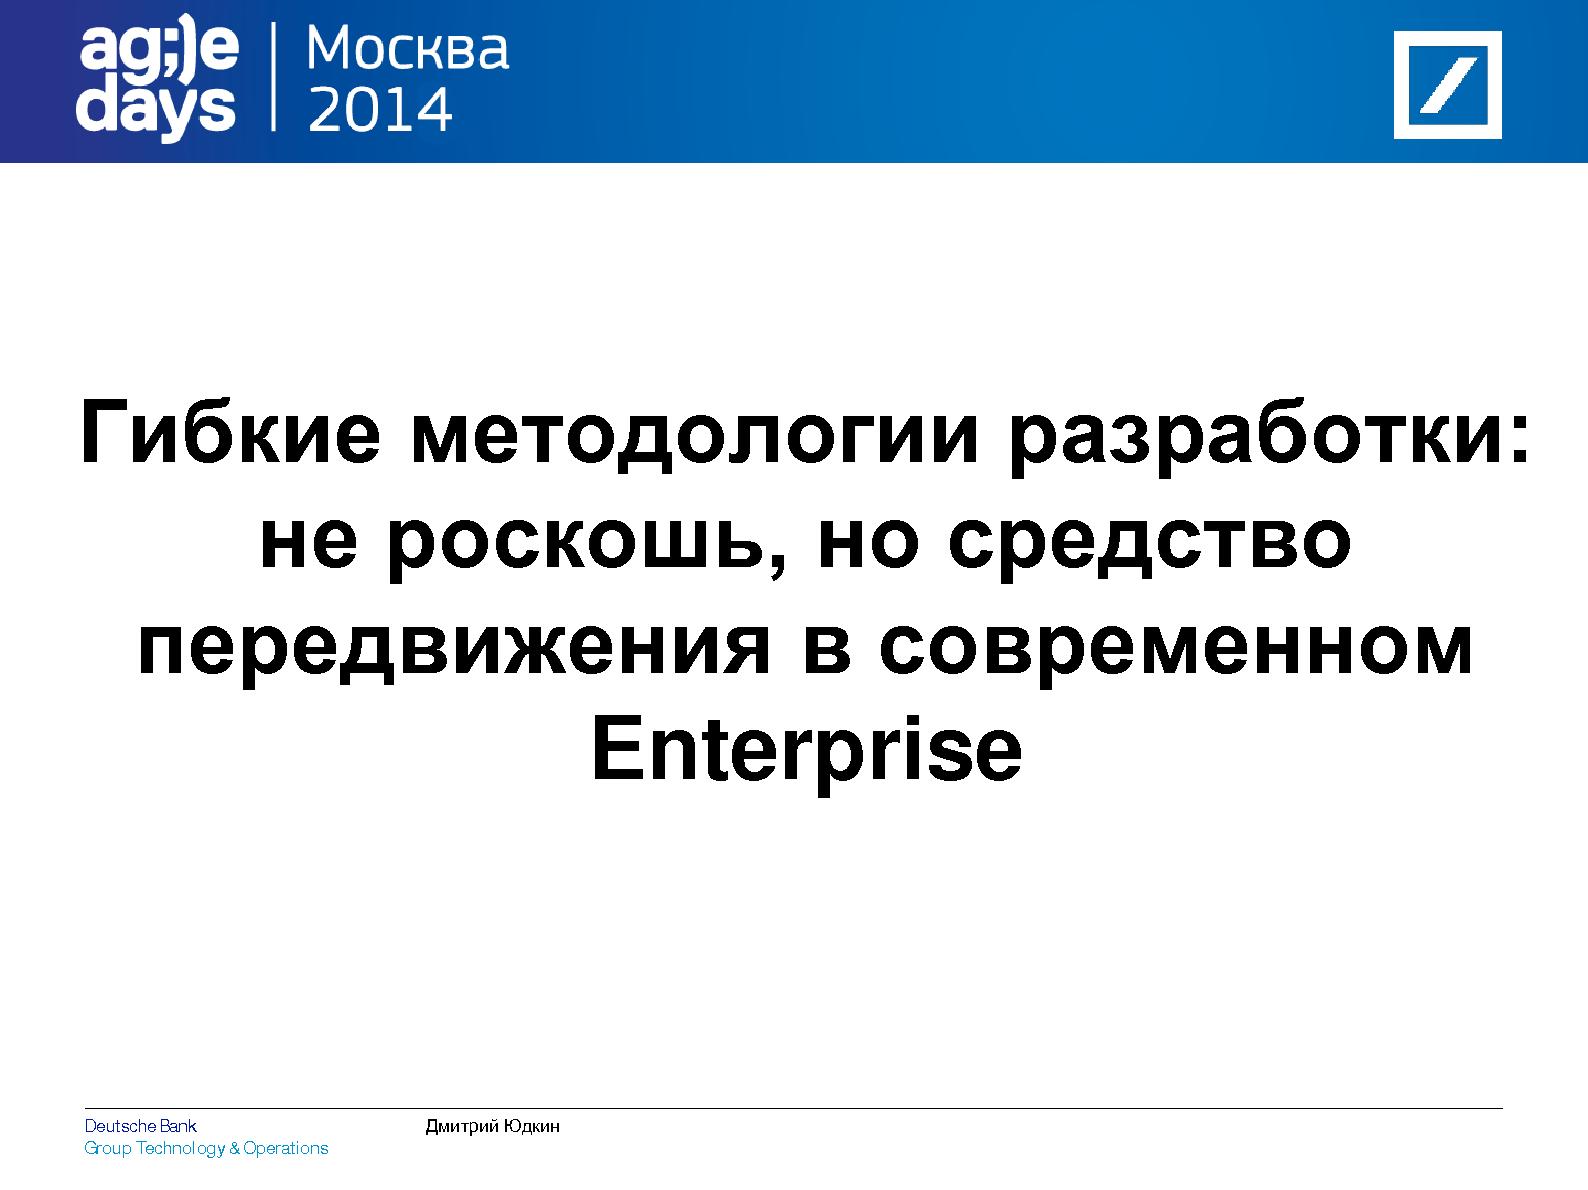 Файл:Успешный IT бизнес в корпоративном секторе должен быть Agile (Дмитрий Юдкин, AgileDays-2014).pdf